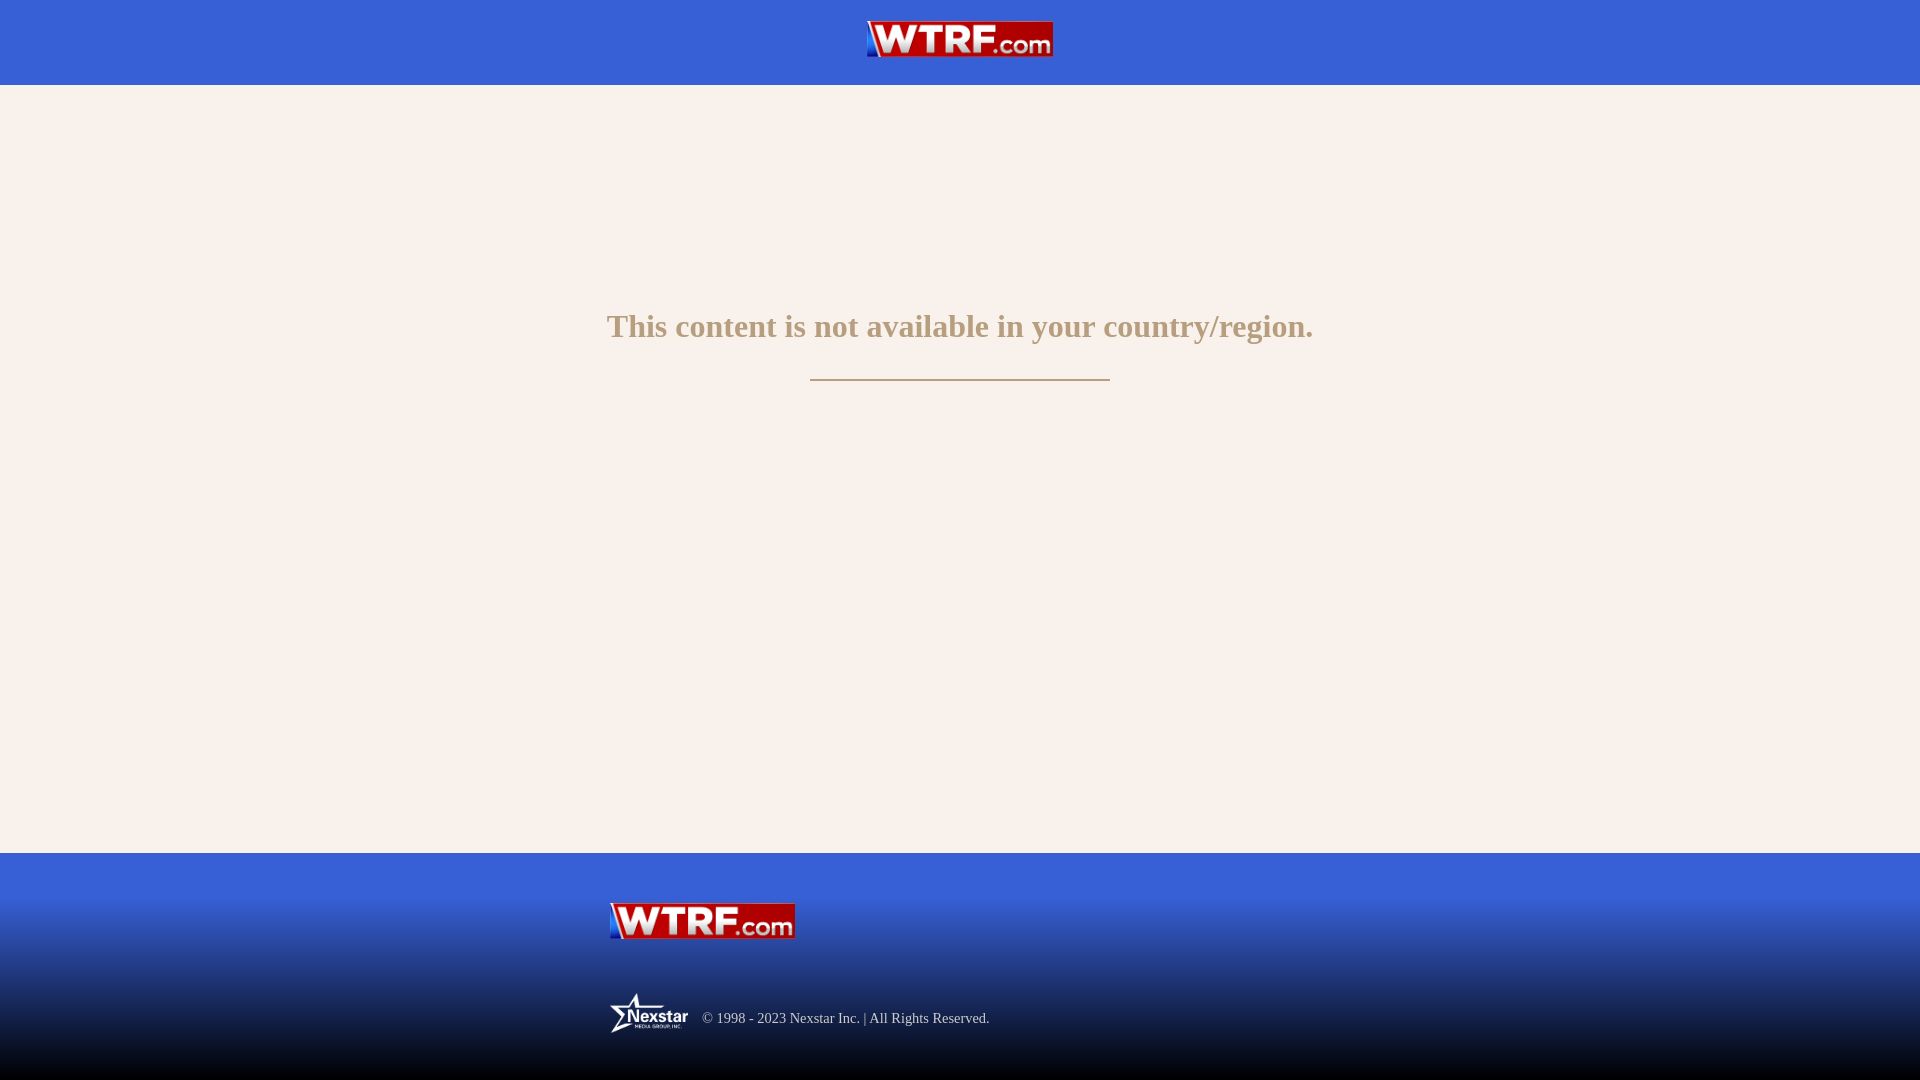 Status do site wtrf.com está   ONLINE